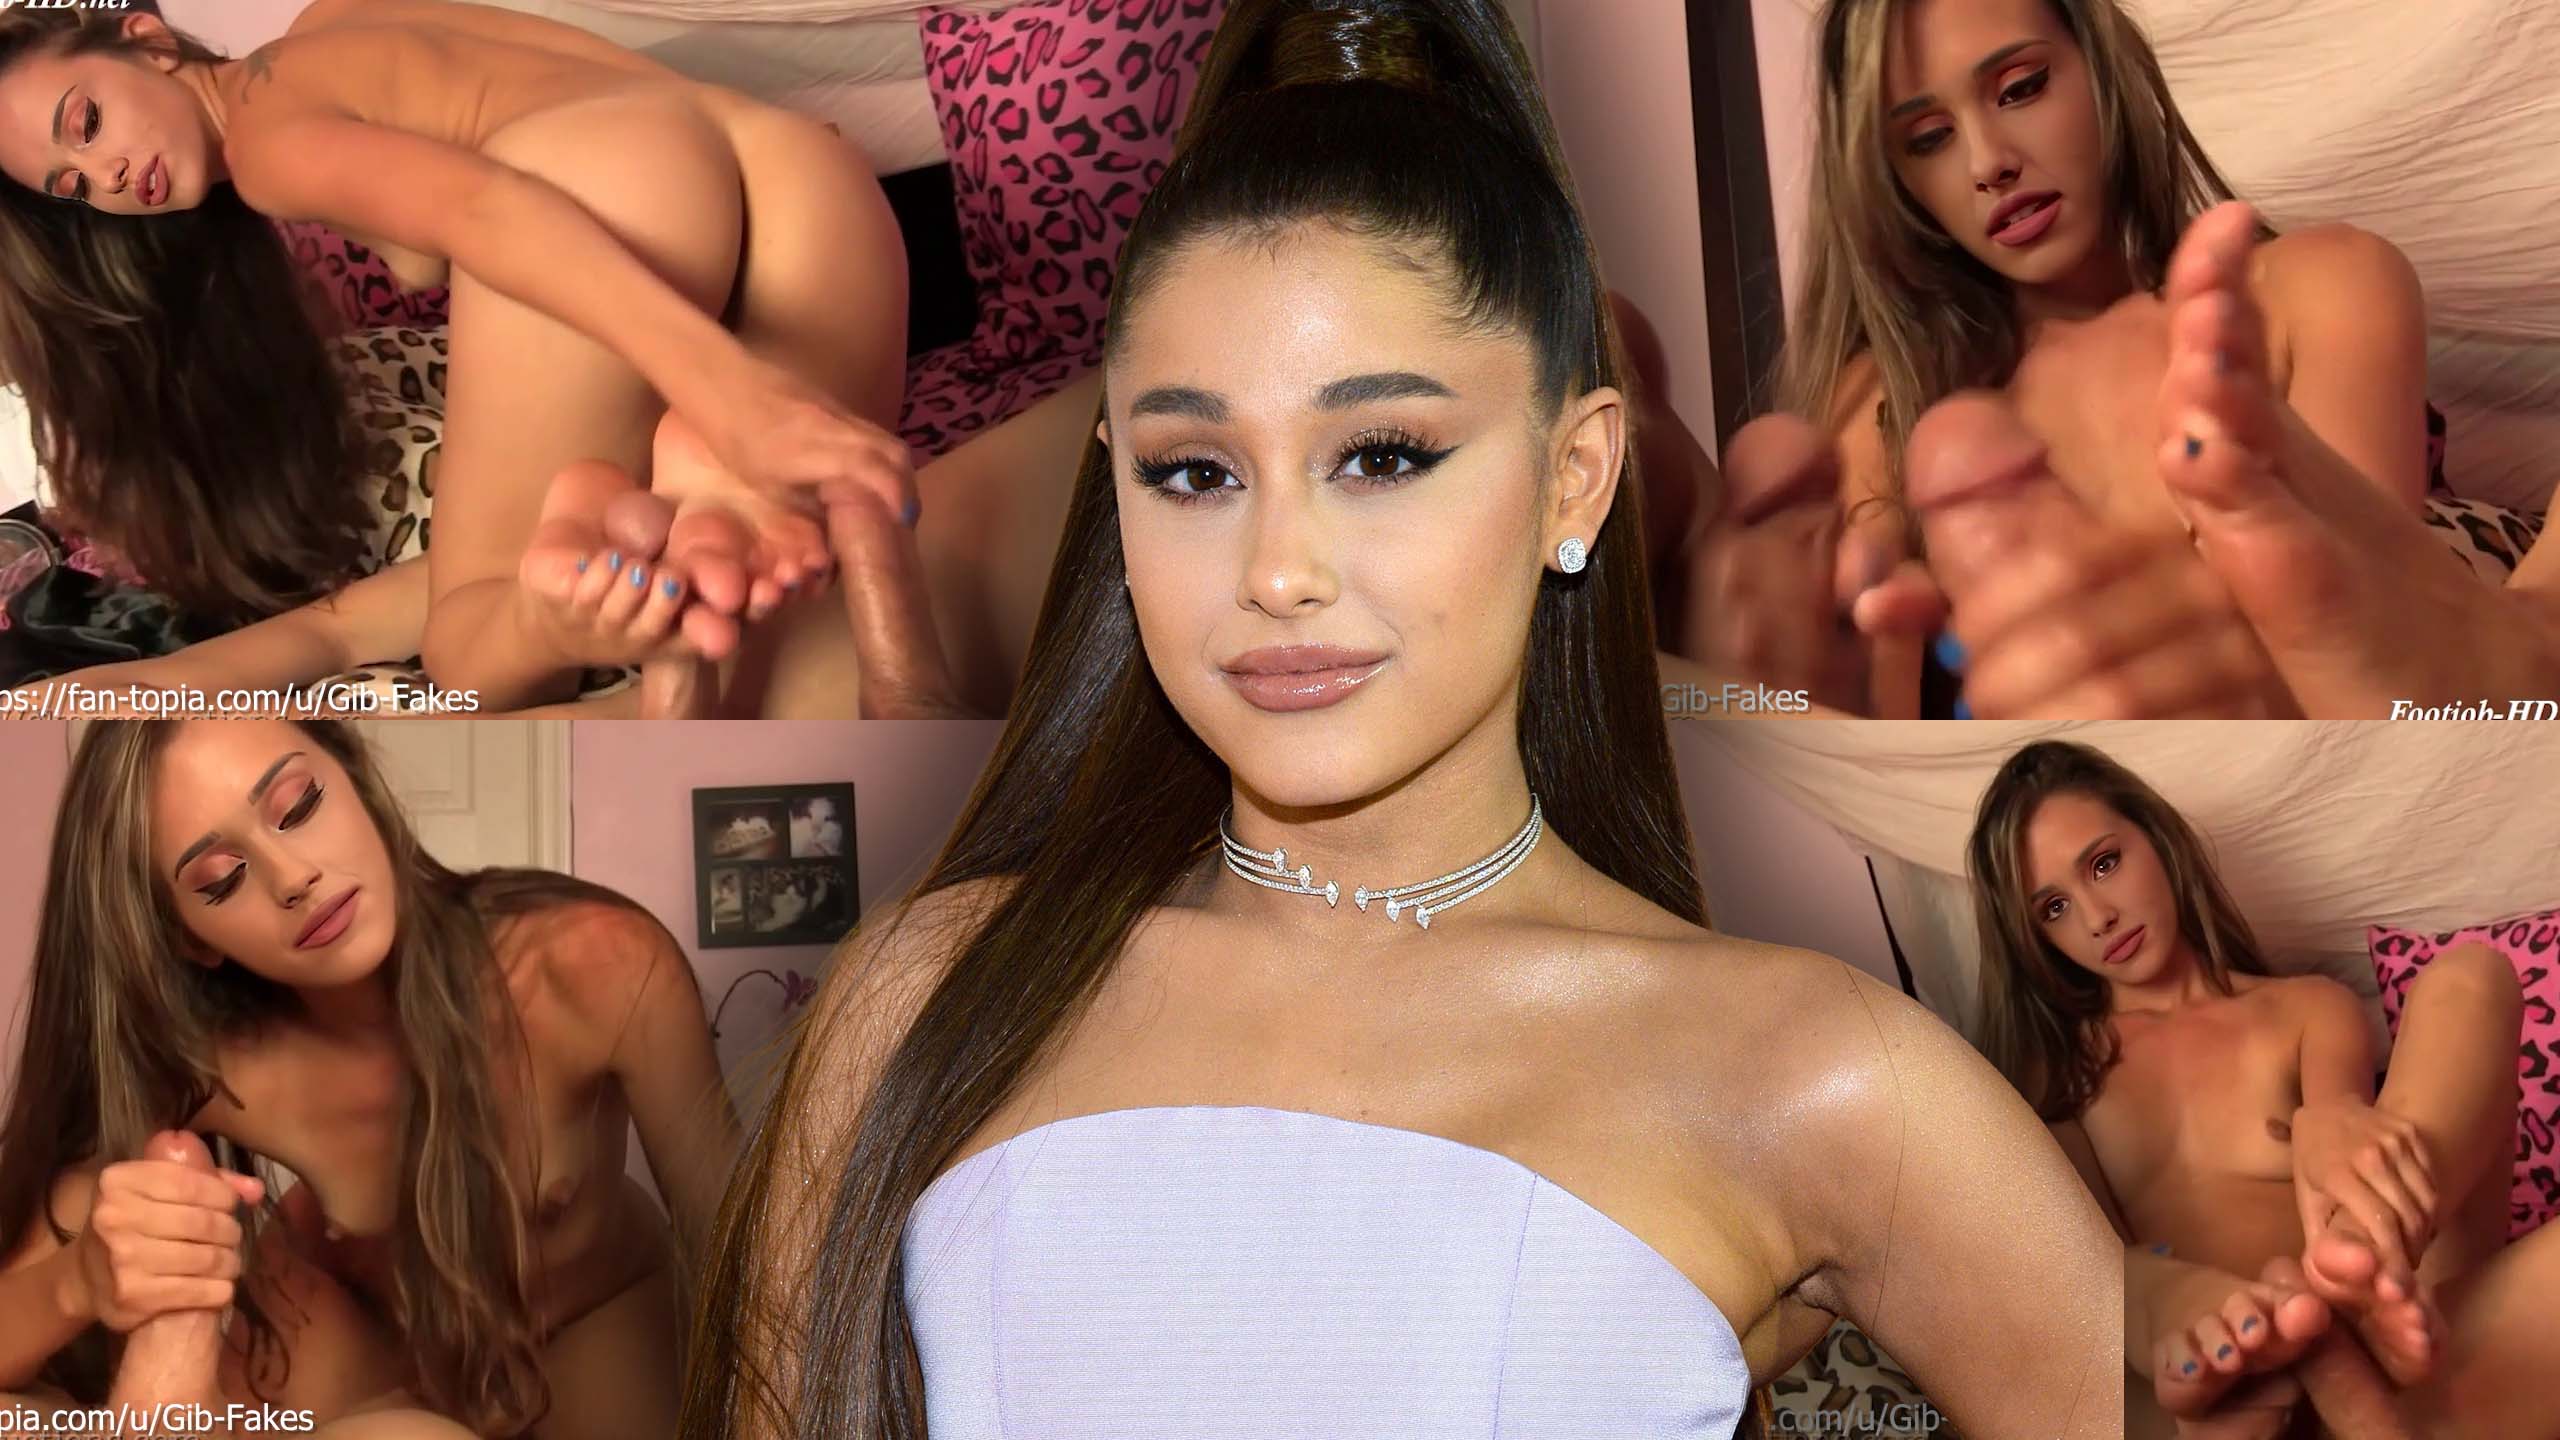 Look Alike Ariana Grande Porn Captions - Ariana Grande Look Alike Lesbian Porn | Sex Pictures Pass